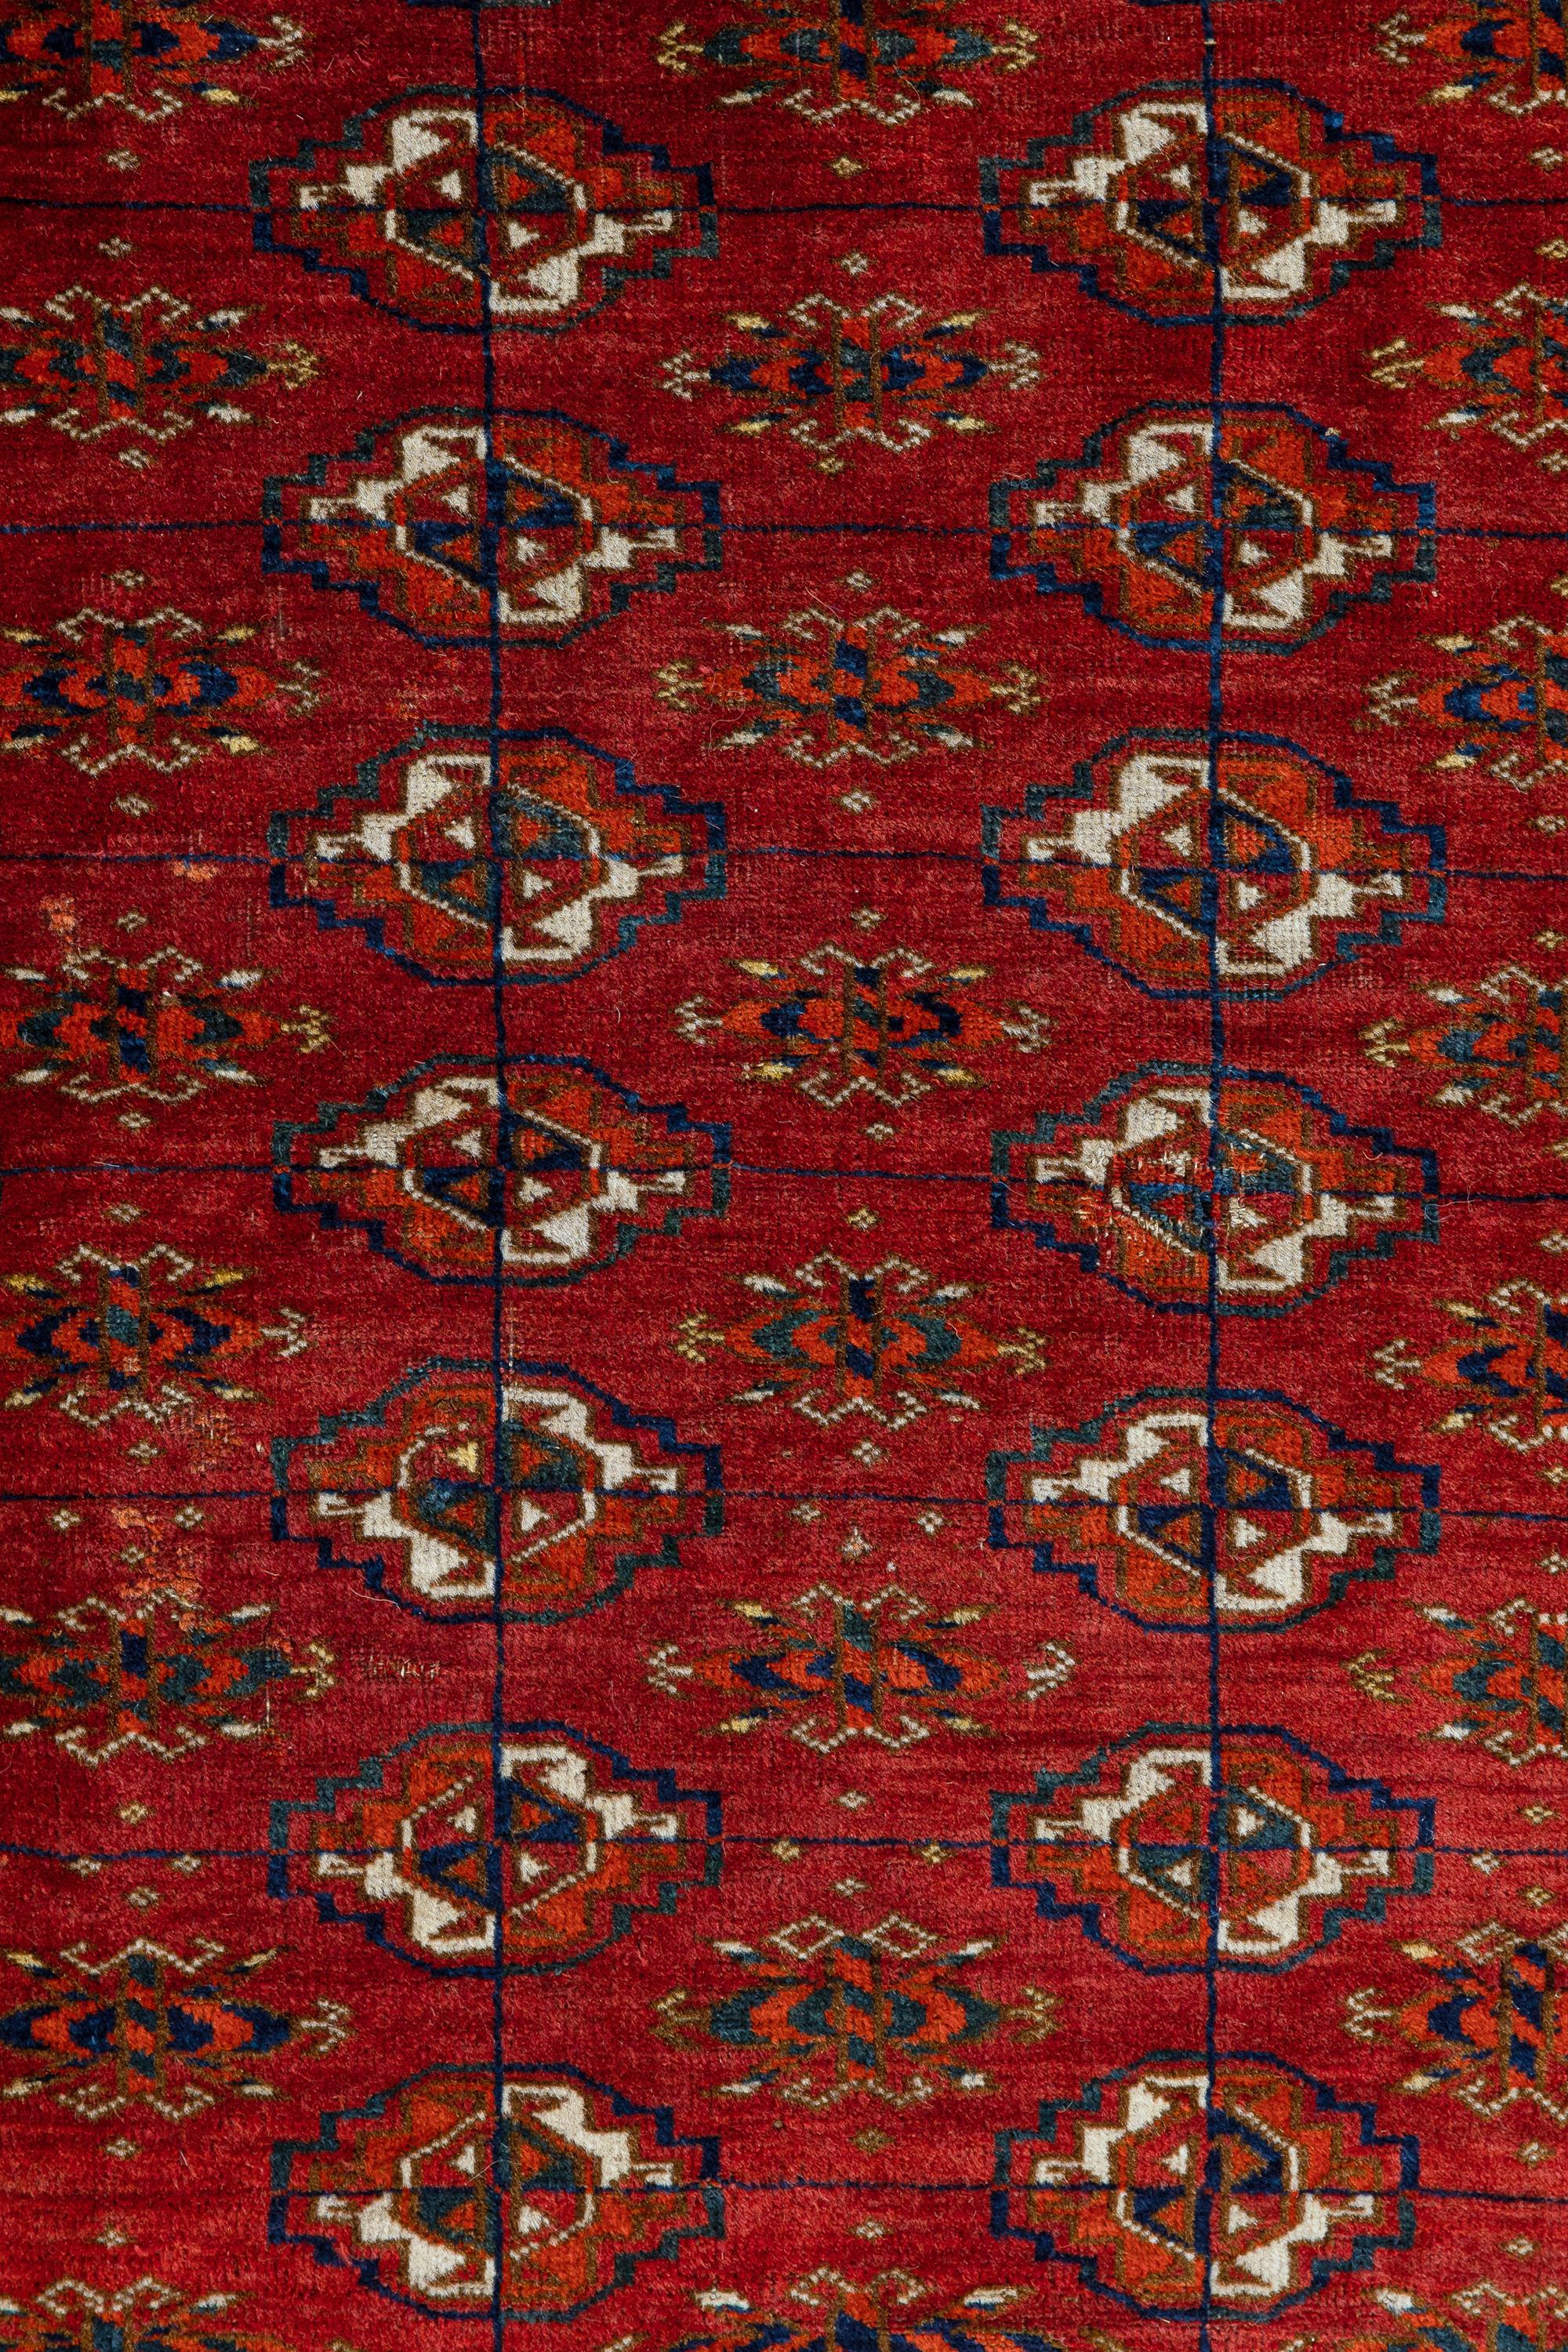 Tekke - Asie centrale

Ancienne Tekke fabriquée au Turkménistan au milieu du 19e siècle. Méticuleusement tissé à la main avec de la laine douce et des teintures naturelles, ce tapis faisait partie de la célèbre collection de tapis turkmènes de Leigh